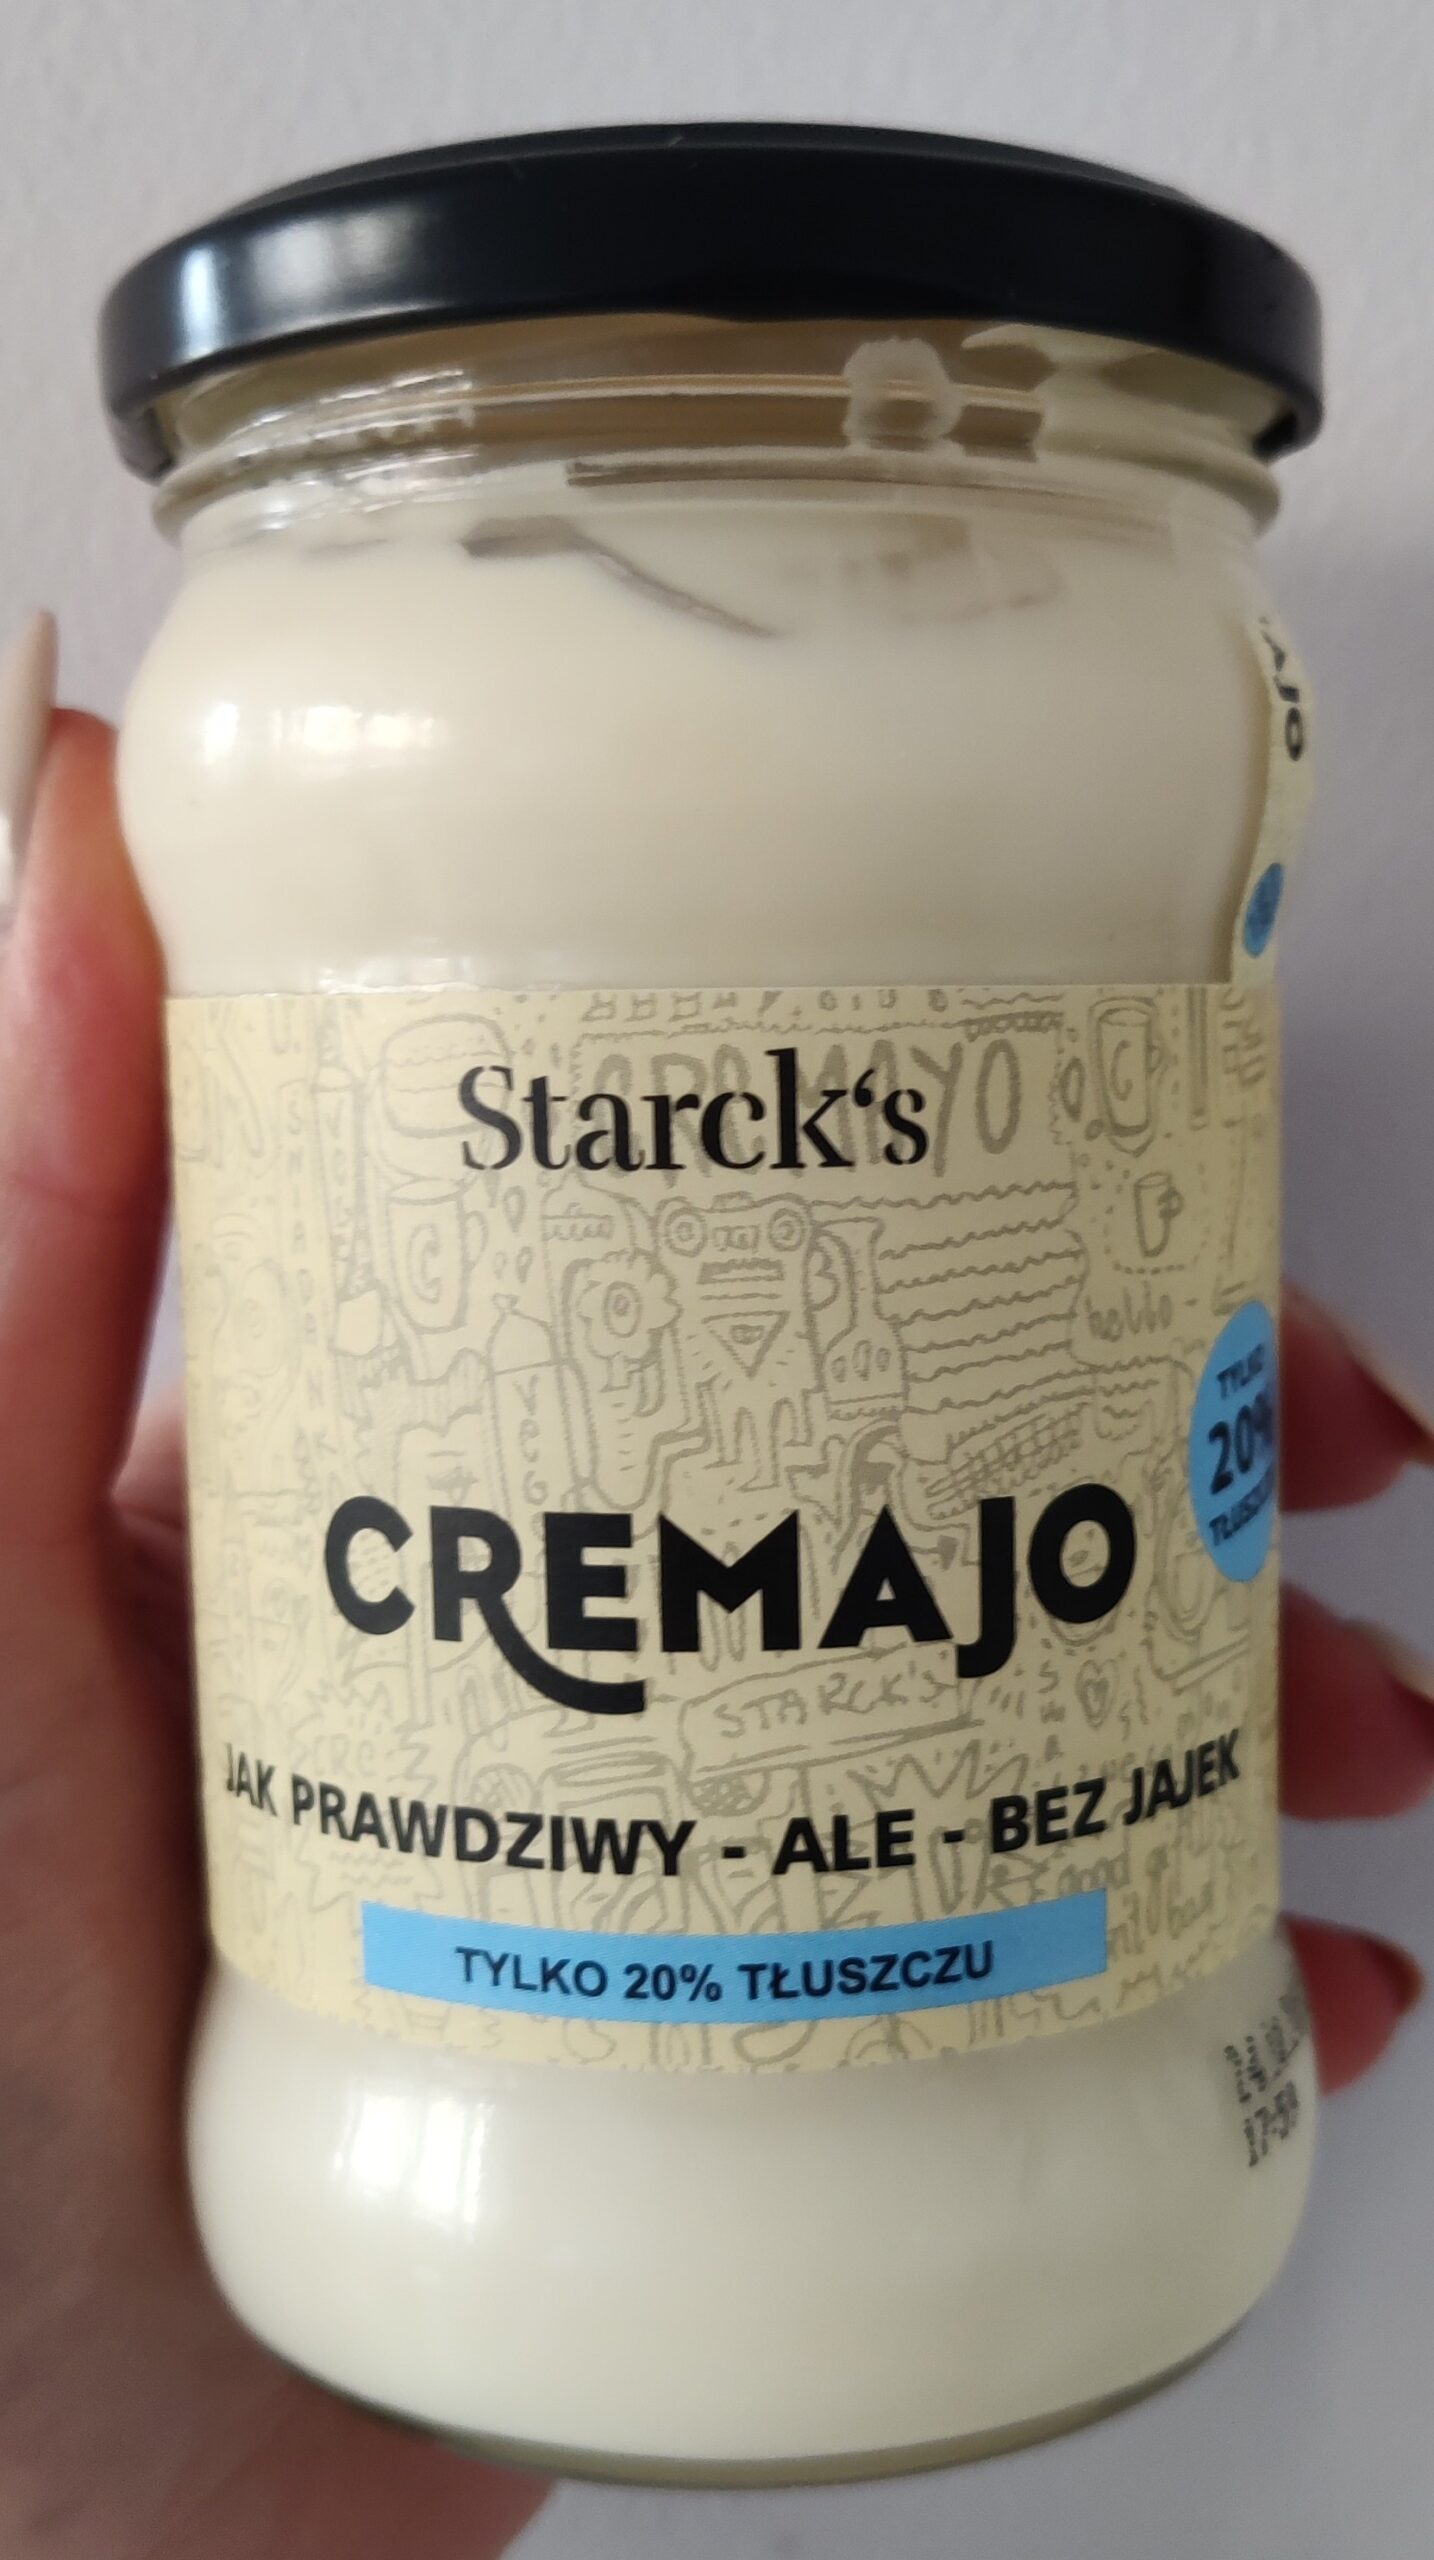 cremajo starcks